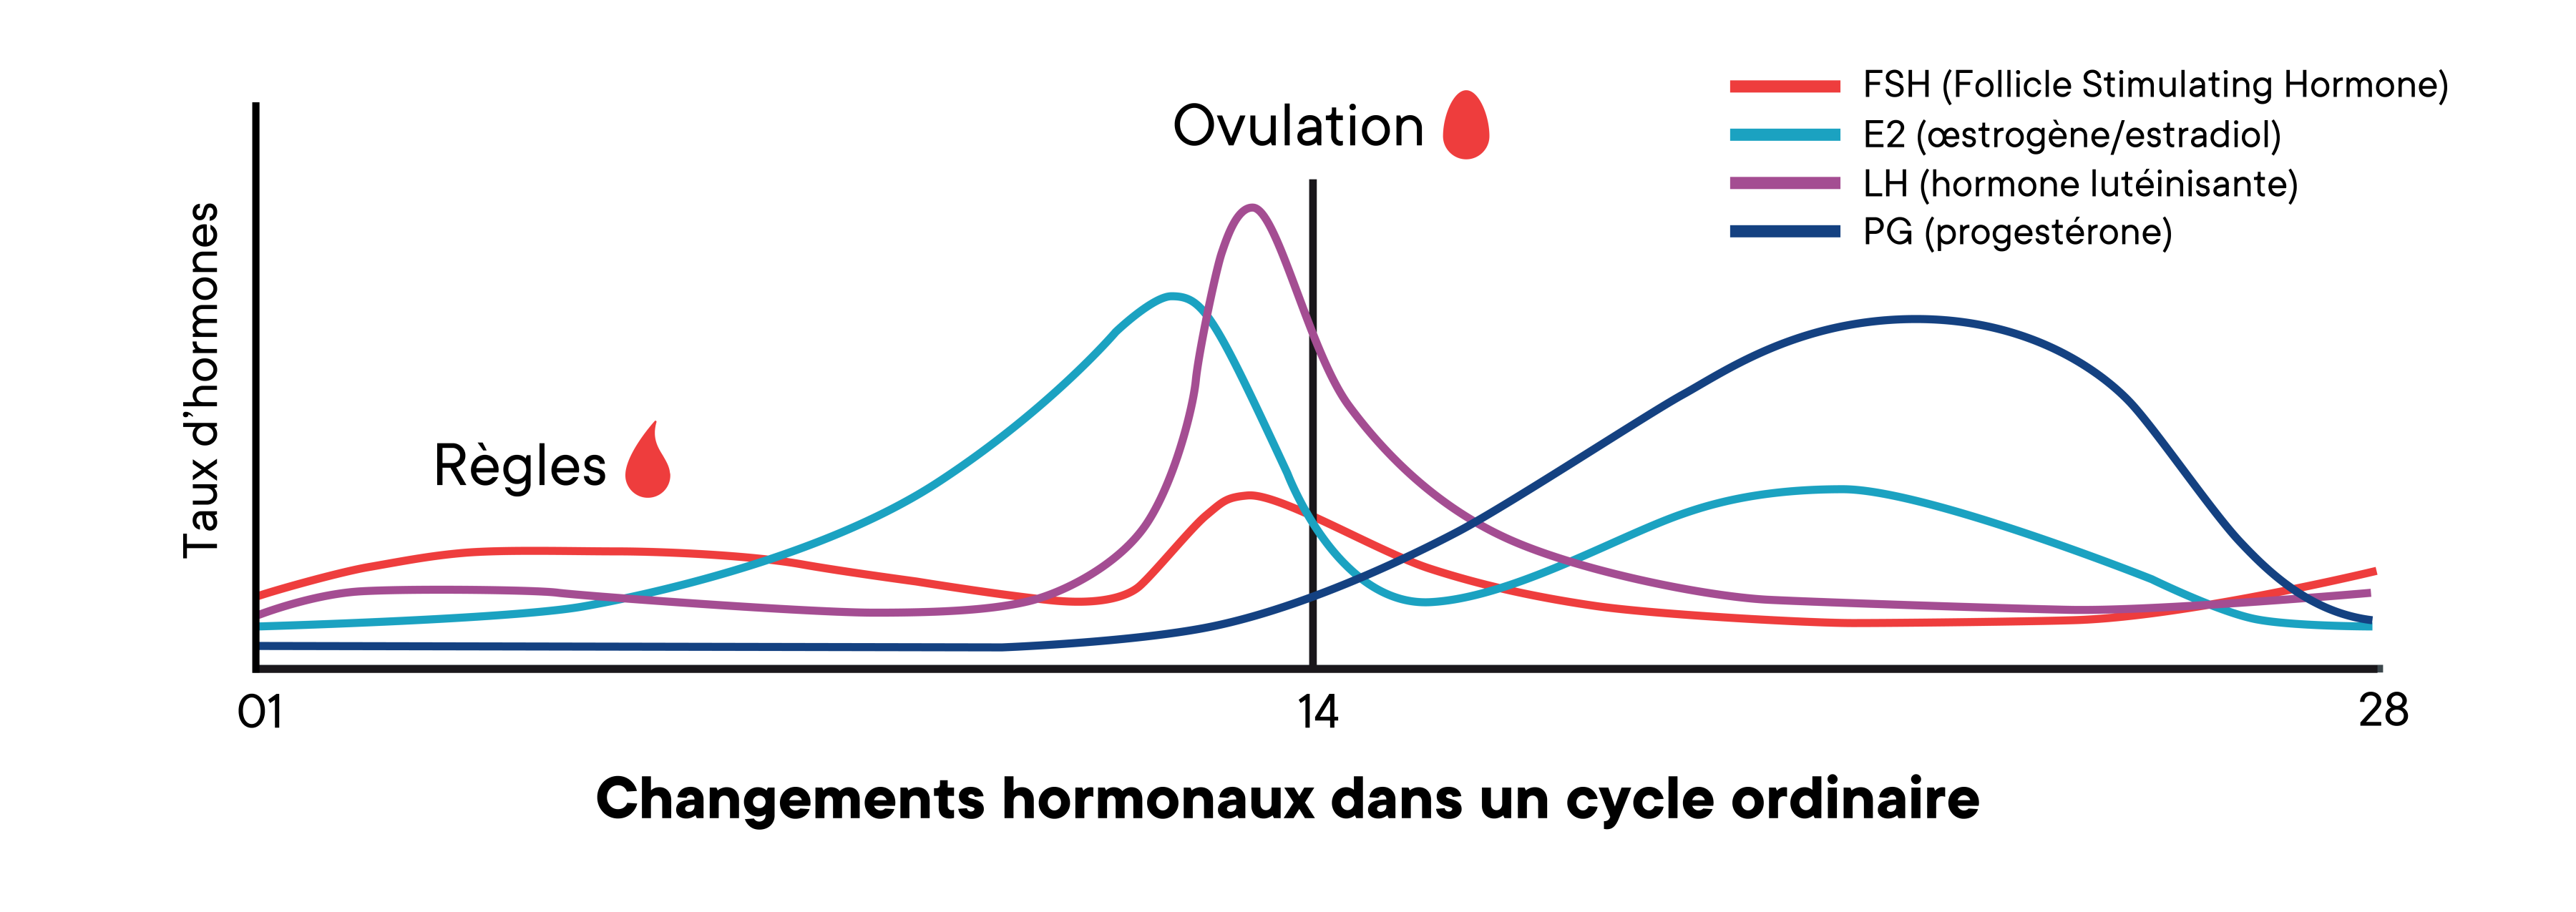 Un graphique montrant les changements des niveaux d'hormones dans un cycle moyen au fil du temps